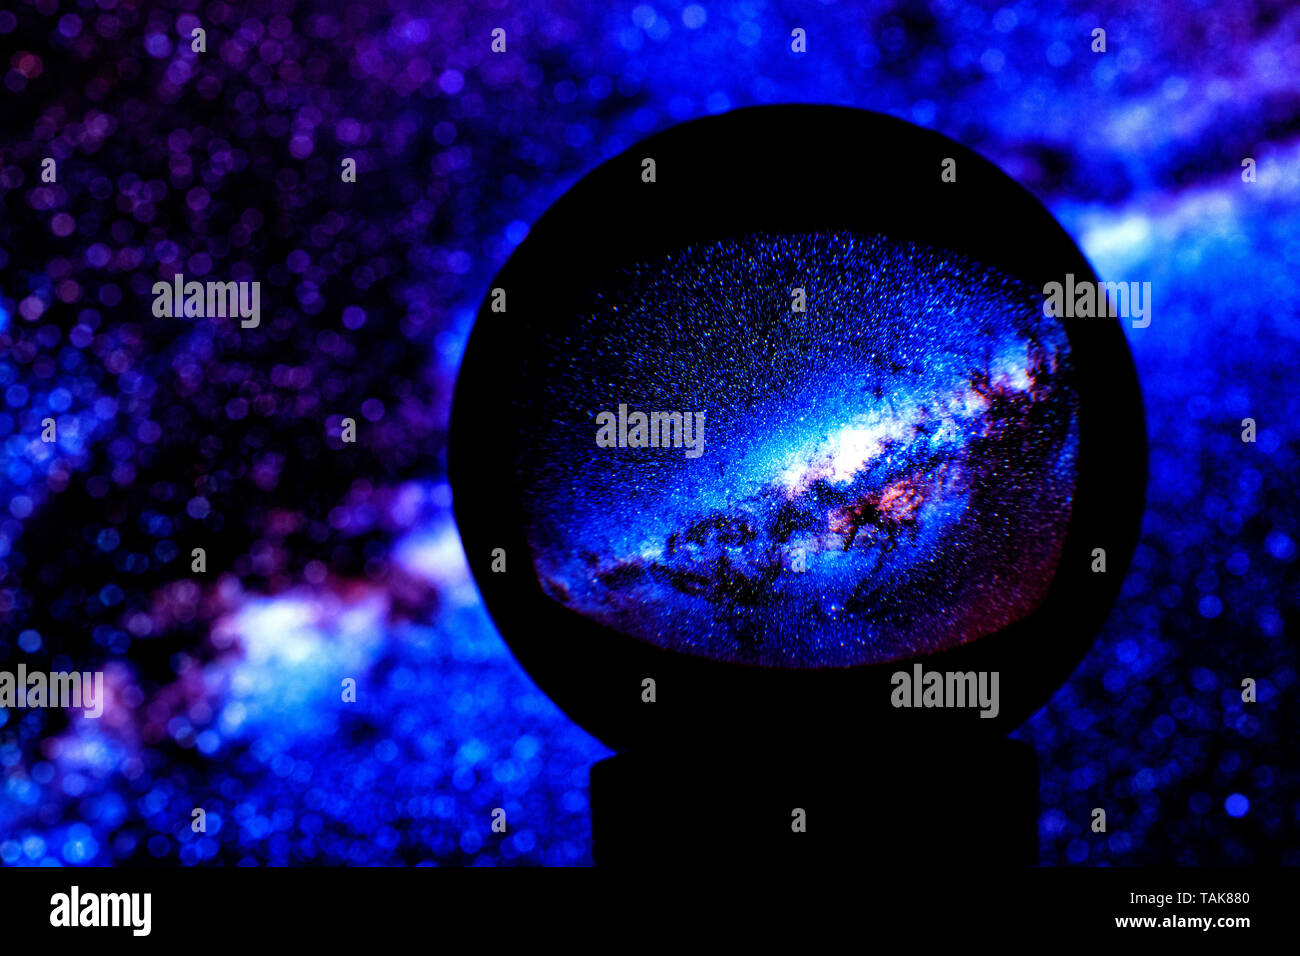 Étoile de la Voie lactée se reflètent dans une boule de cristal bleu sur un arrière-plan flou, sur le côté gauche de la copie de l'espace. Banque D'Images